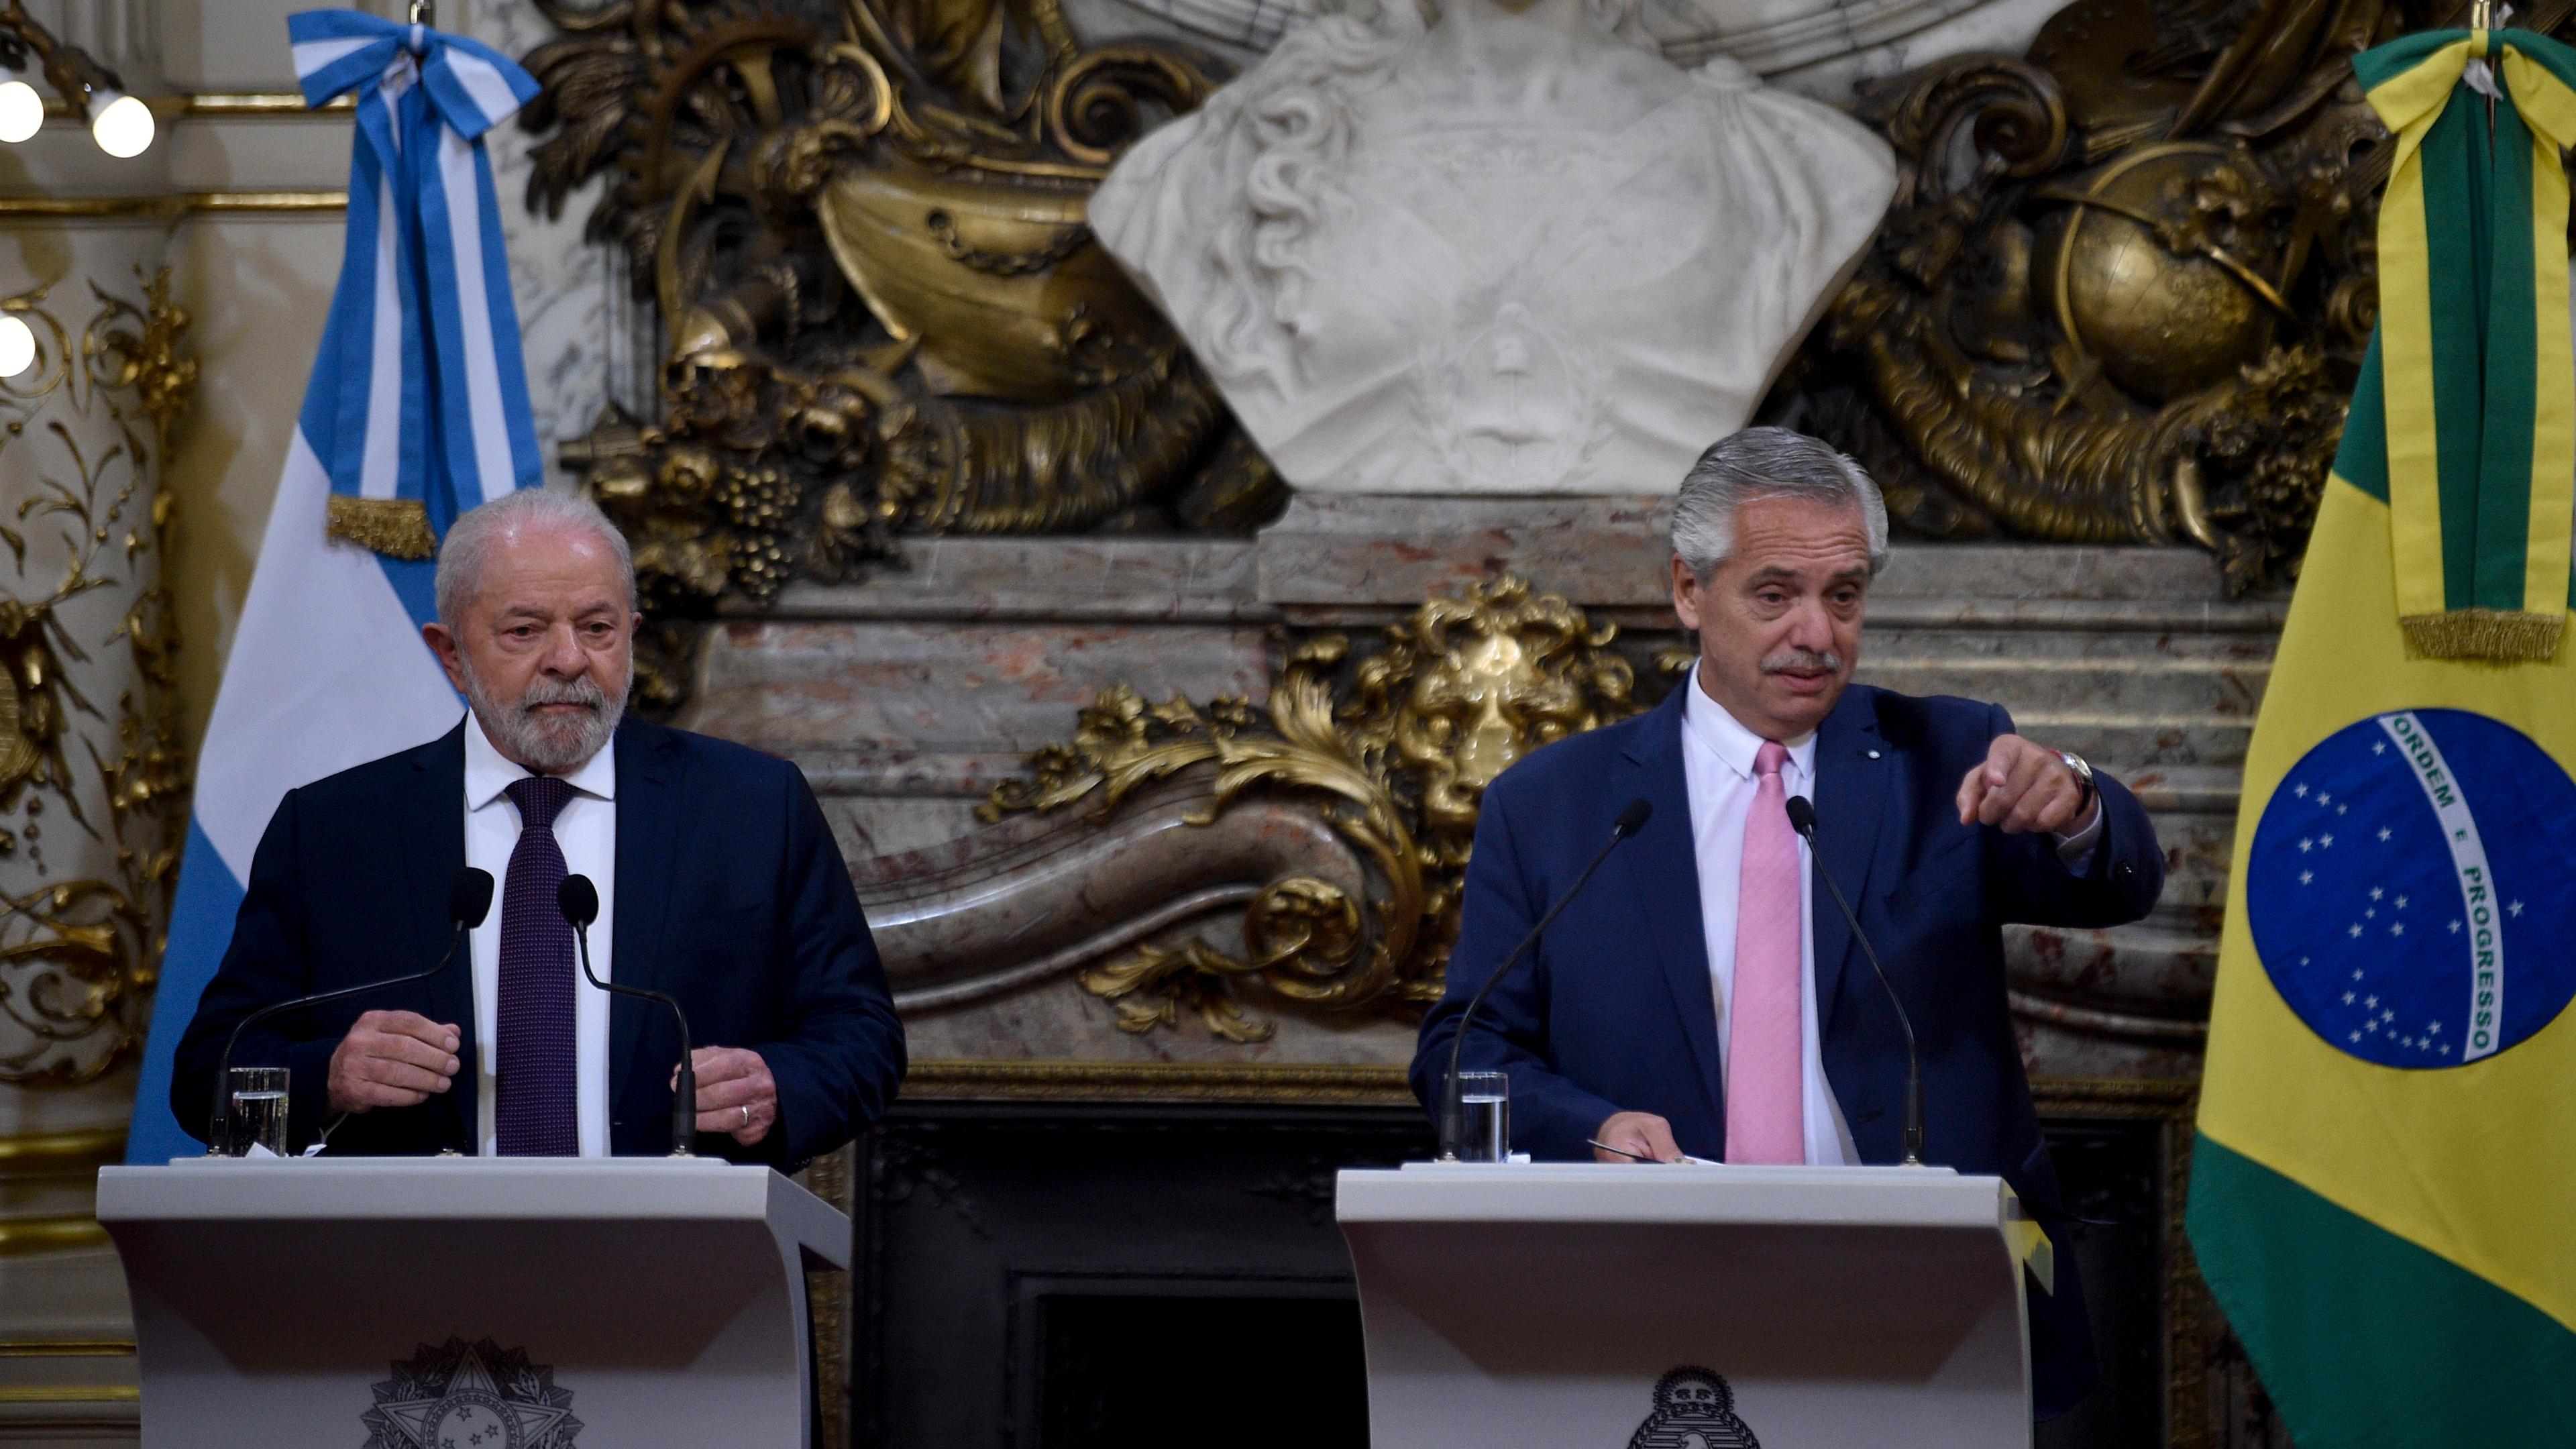 Argentinien, Buenos Aires: Luiz Inacio Lula da Silva (l), Präsident von Brasilien, und Alberto Fernandez, Präsident von Argentinien, geben eine gemeinsame Pressekonferenz im Regierungsgebäude.